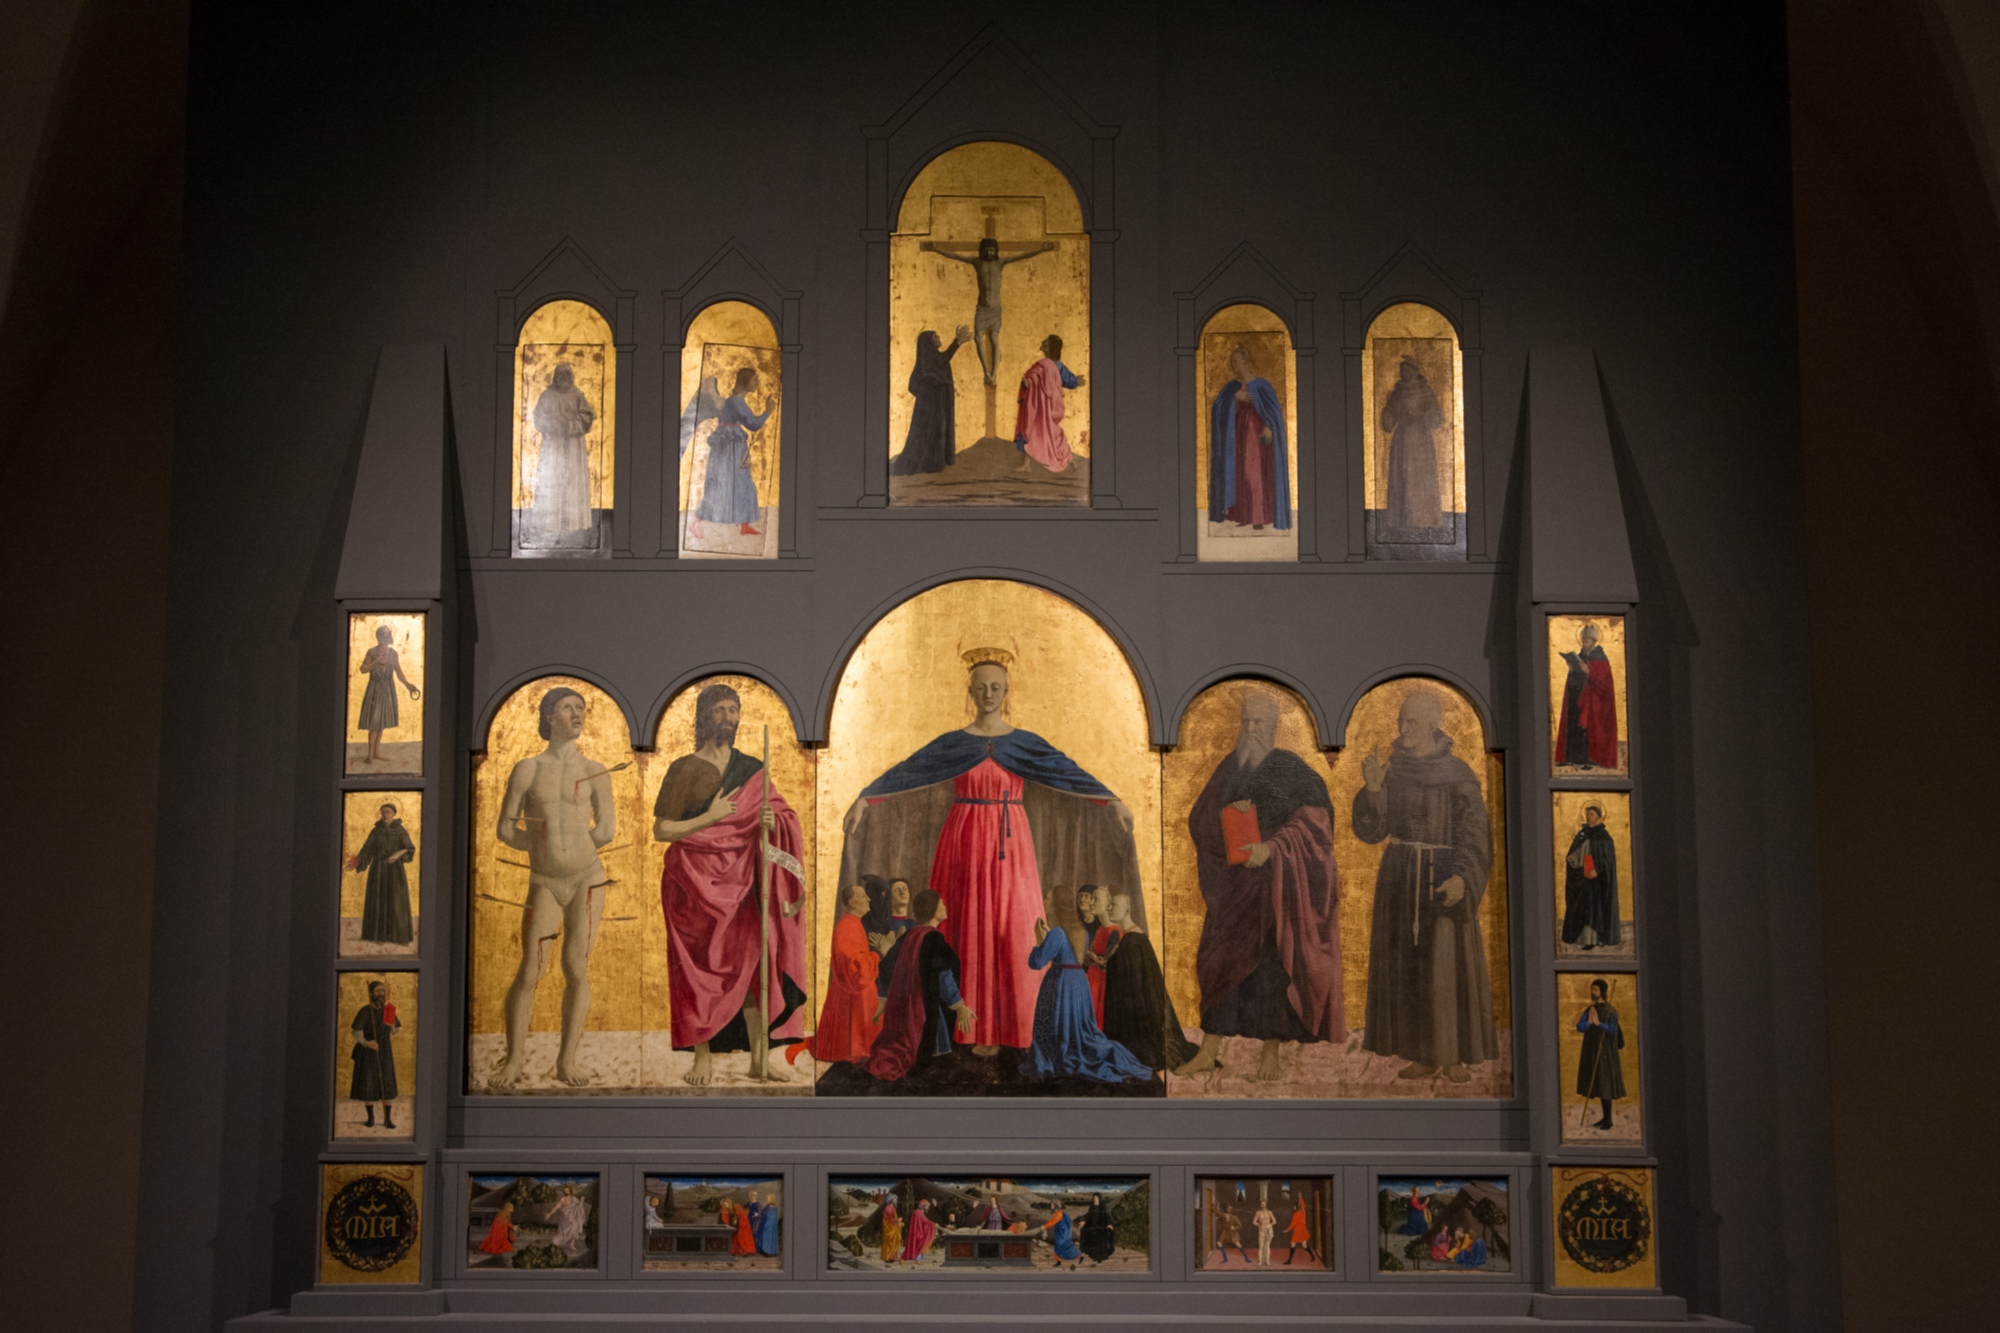 Polittico della Misericordia, Piero della Francesca